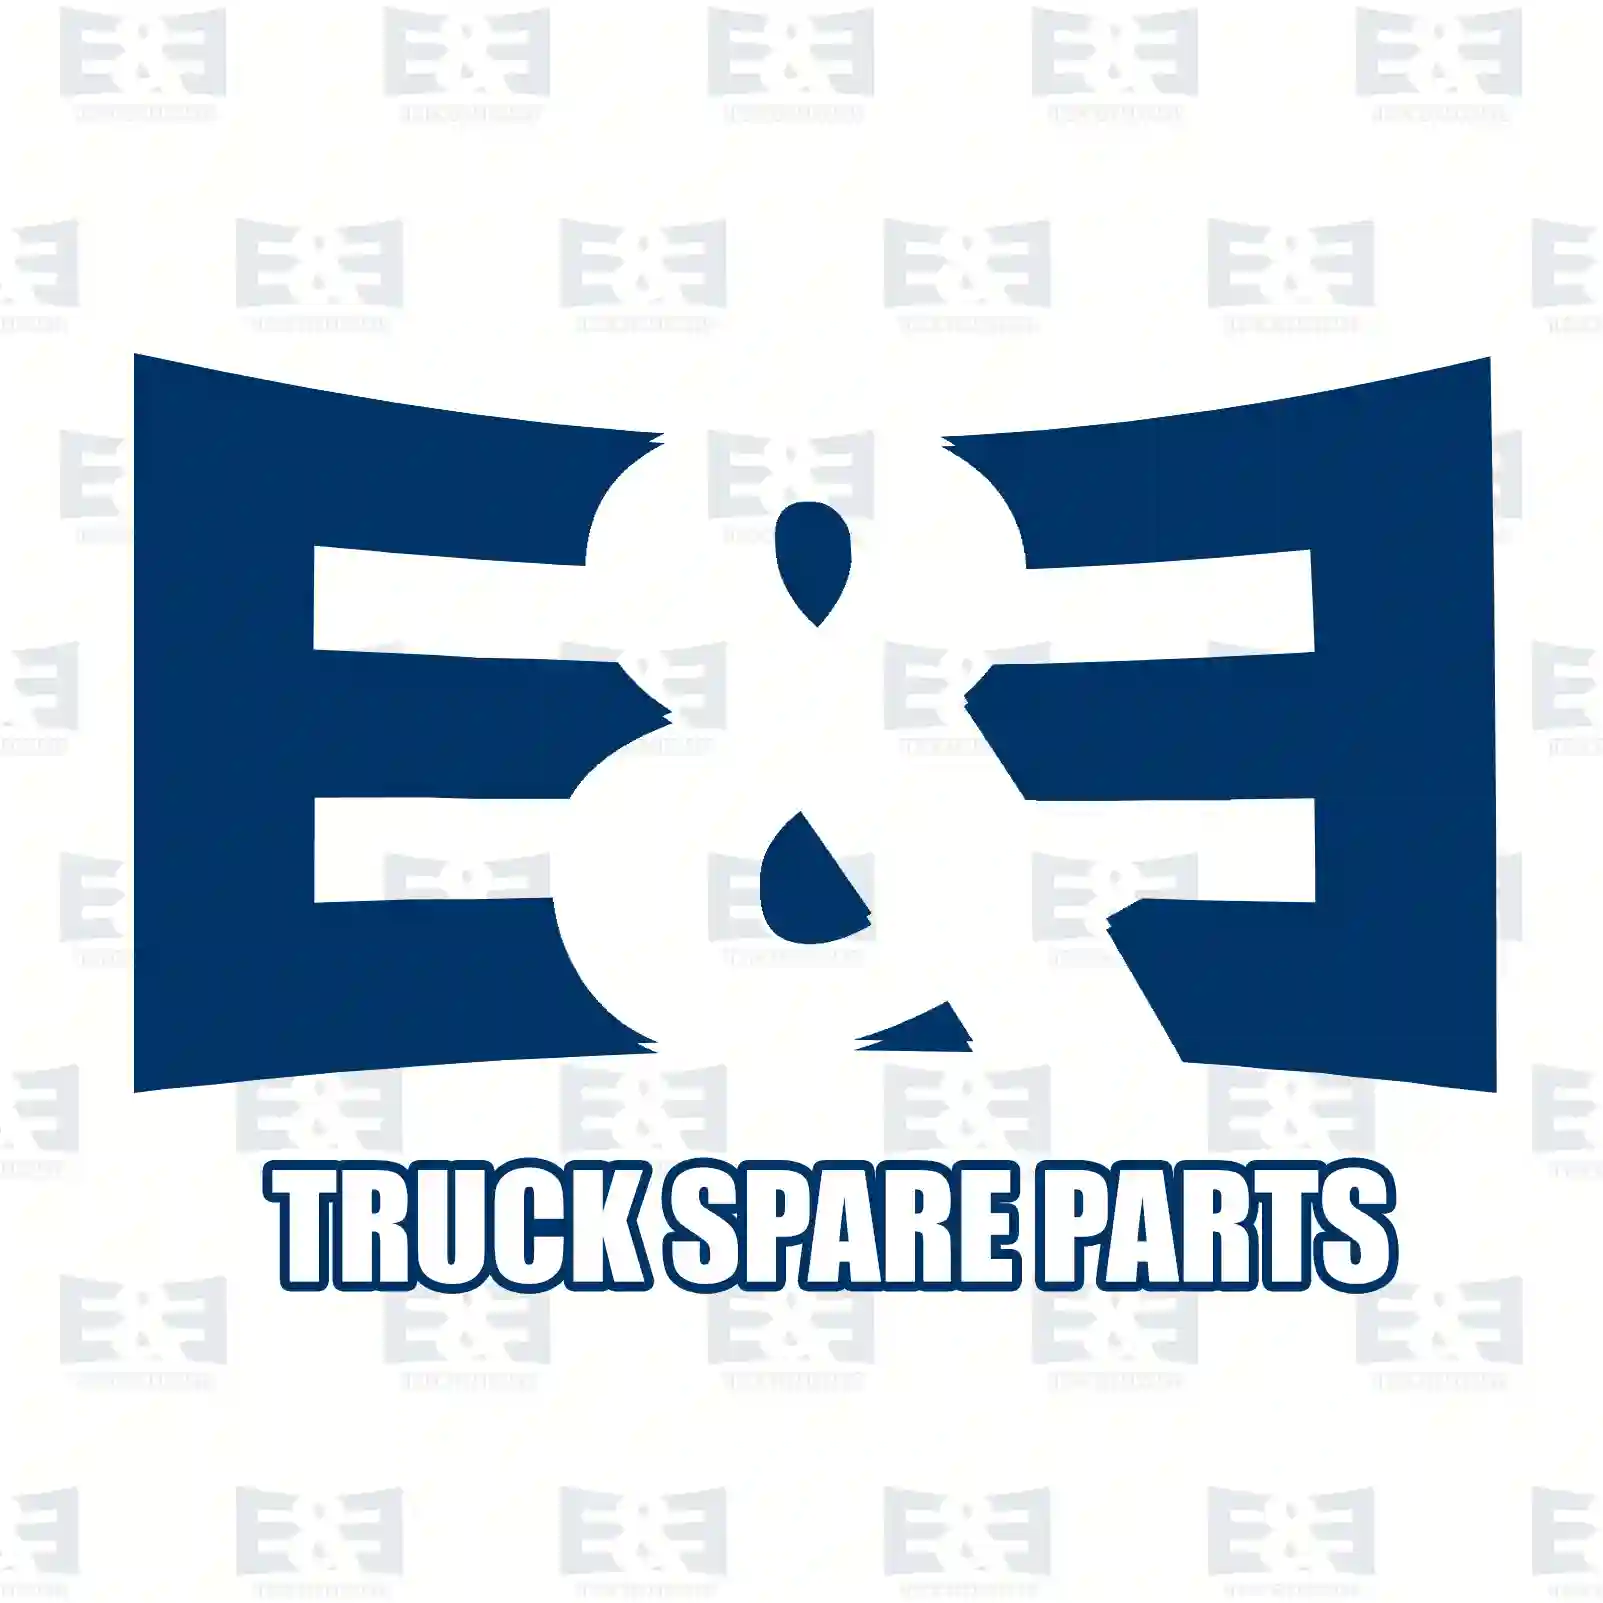 Wear indicator, 2E2294563, 81259370021, 81259370026, 81259370028, 81259370032, 81259370033, 81259376011, 81259376021 ||  2E2294563 E&E Truck Spare Parts | Truck Spare Parts, Auotomotive Spare Parts Wear indicator, 2E2294563, 81259370021, 81259370026, 81259370028, 81259370032, 81259370033, 81259376011, 81259376021 ||  2E2294563 E&E Truck Spare Parts | Truck Spare Parts, Auotomotive Spare Parts